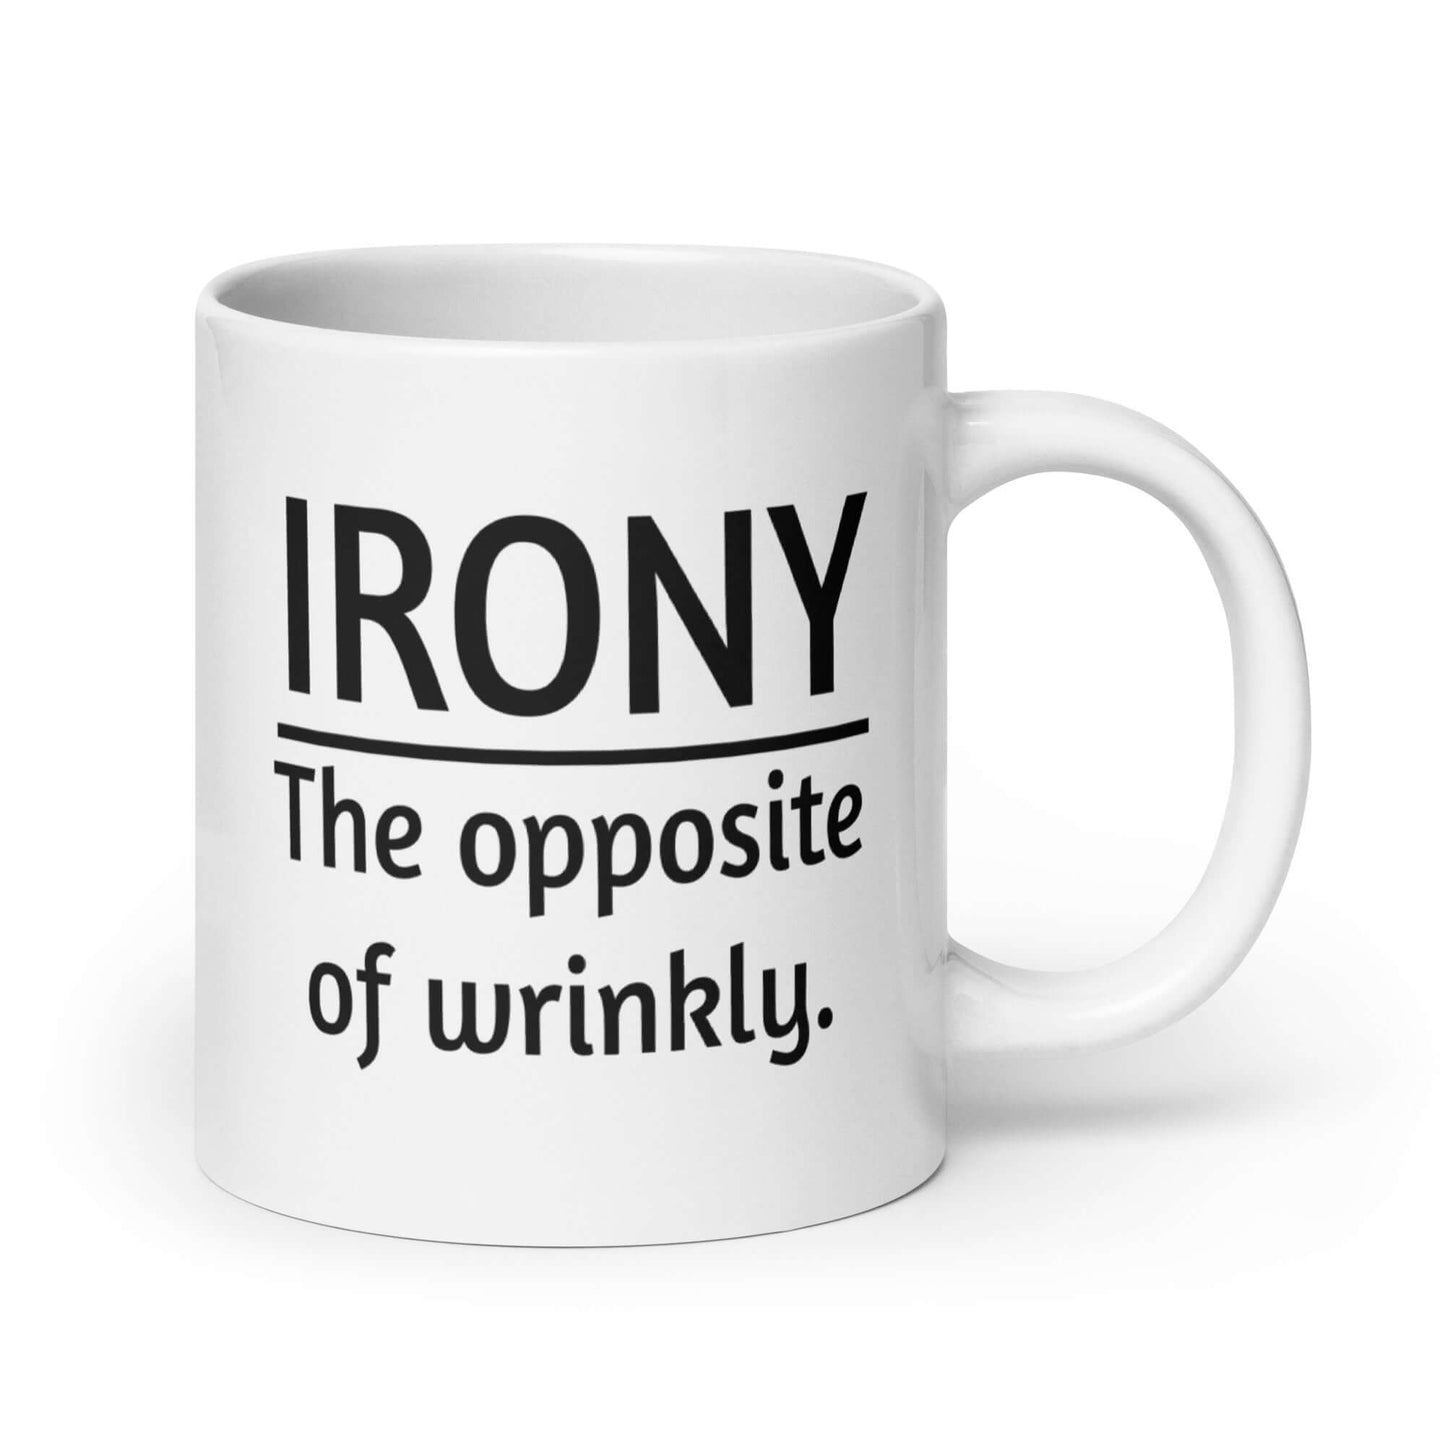 Funny irony pun mug